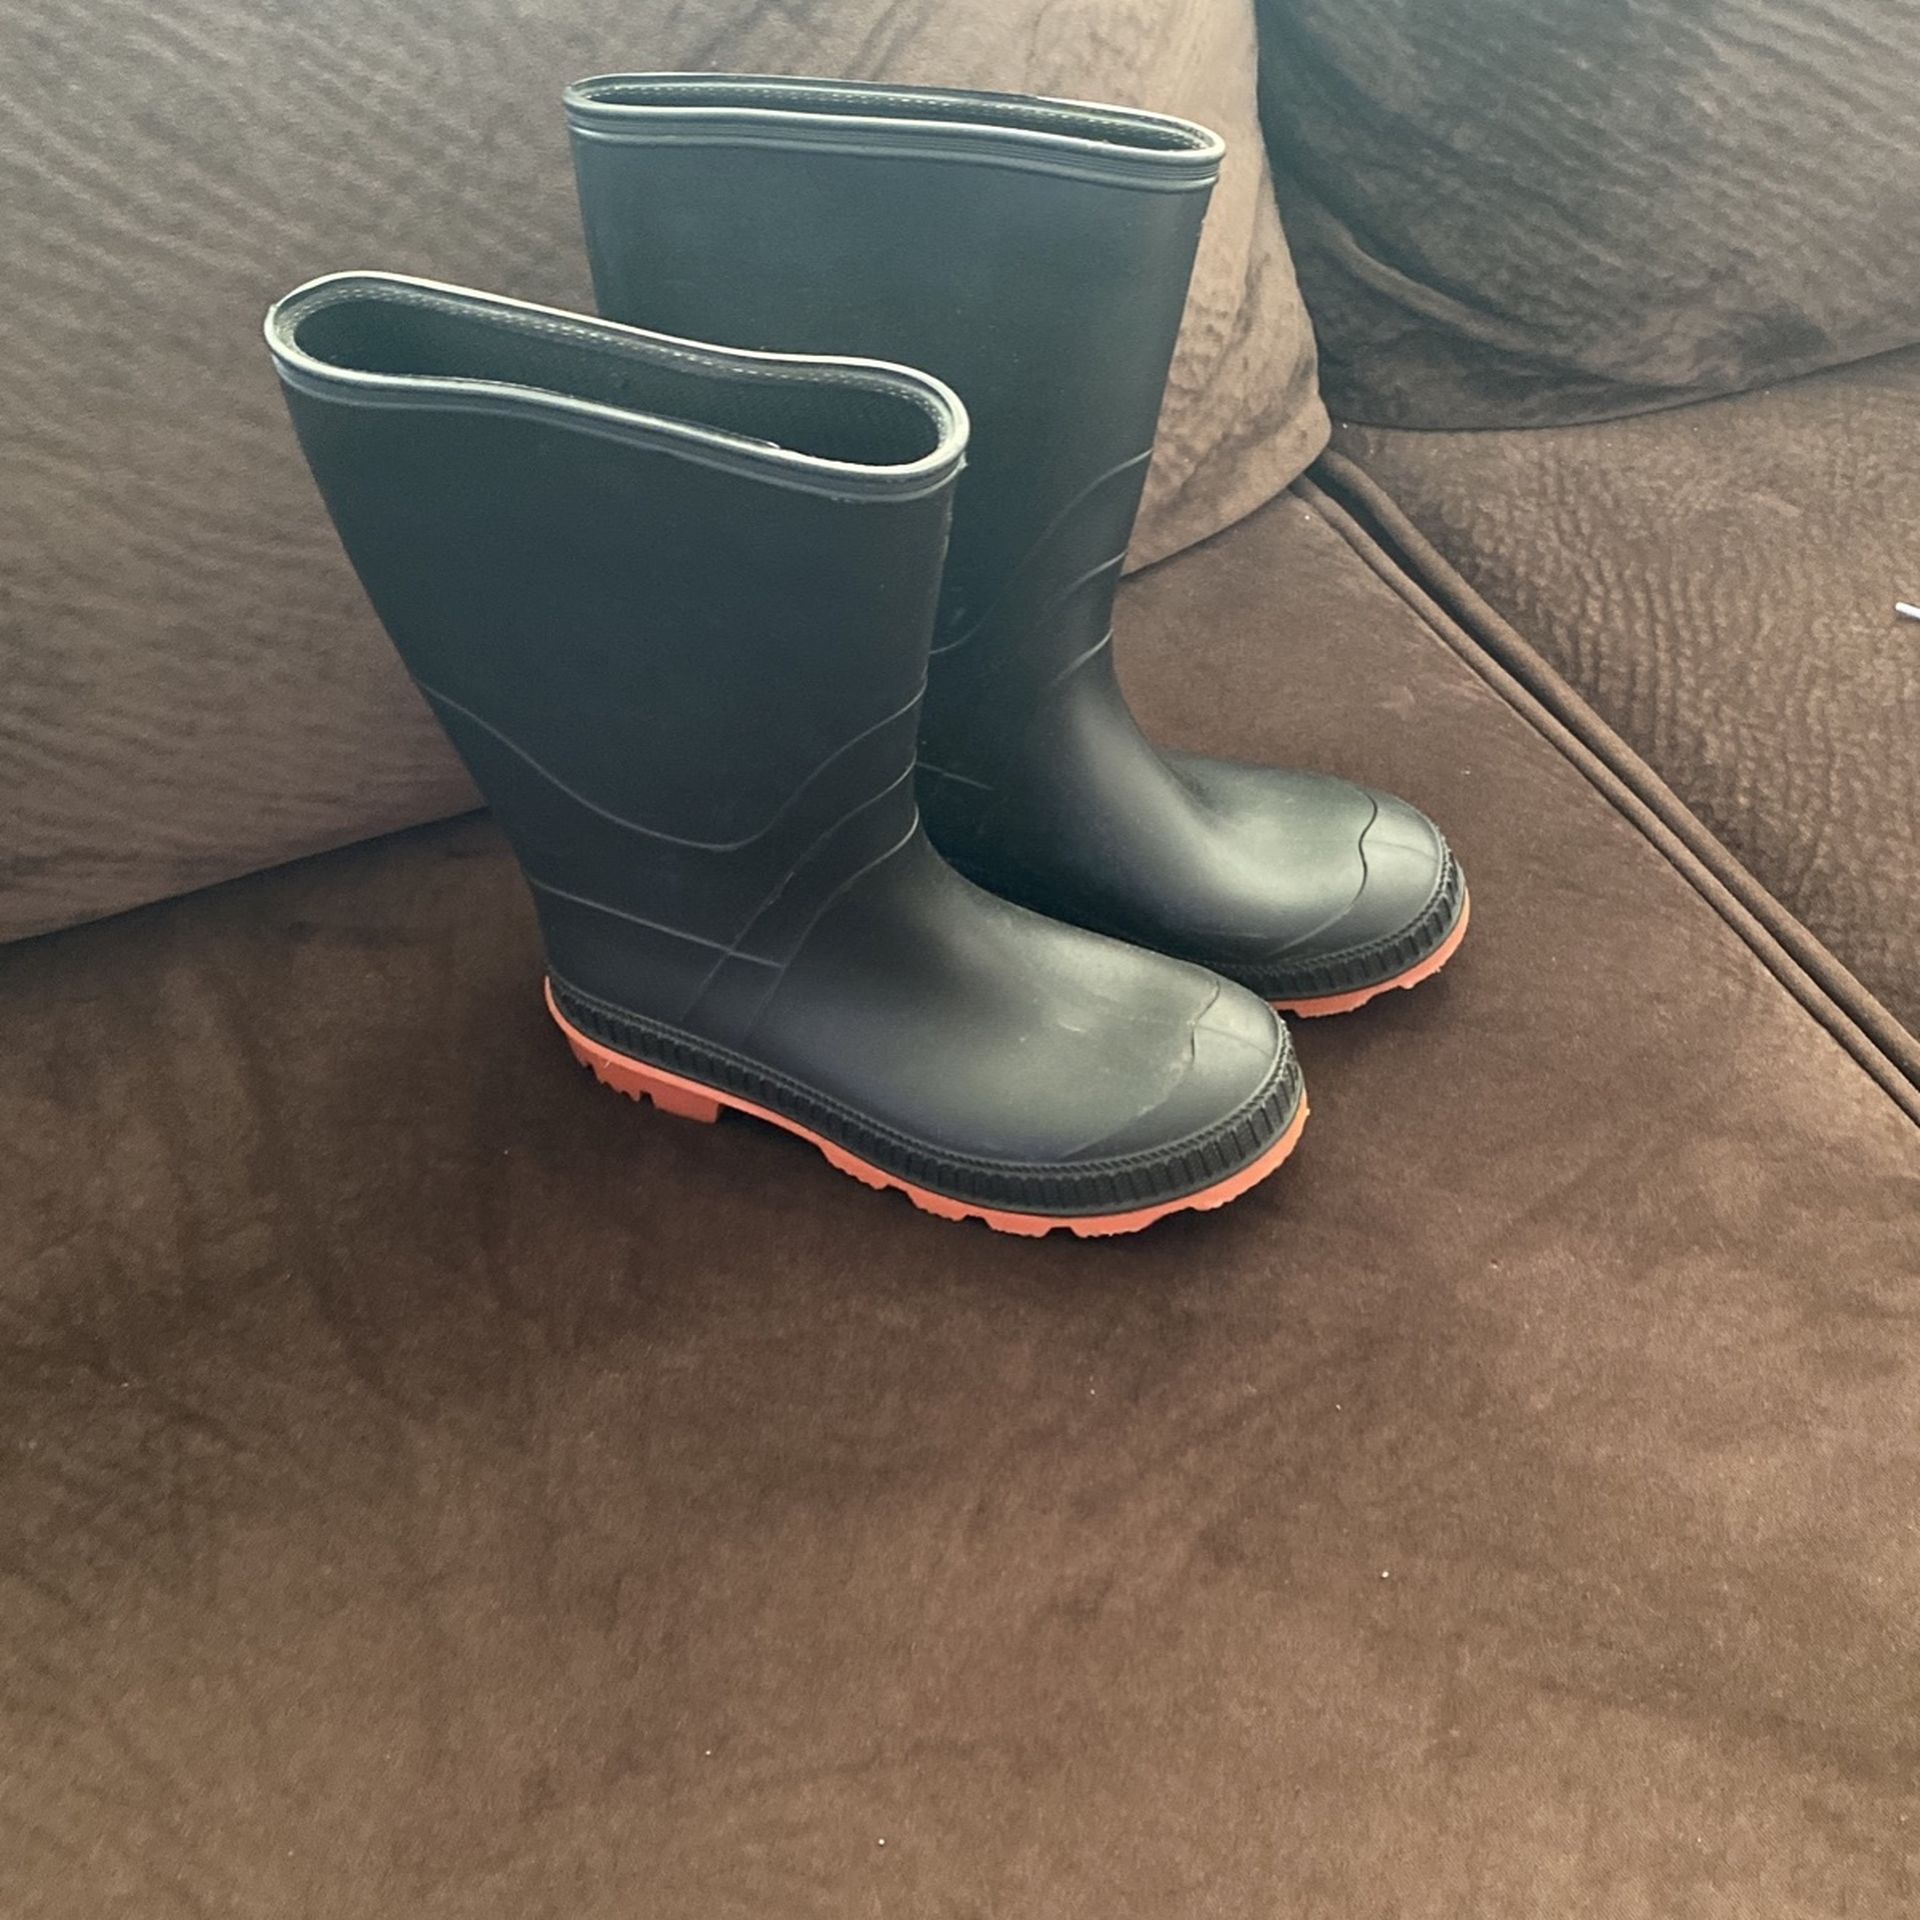 Rain boots size 3